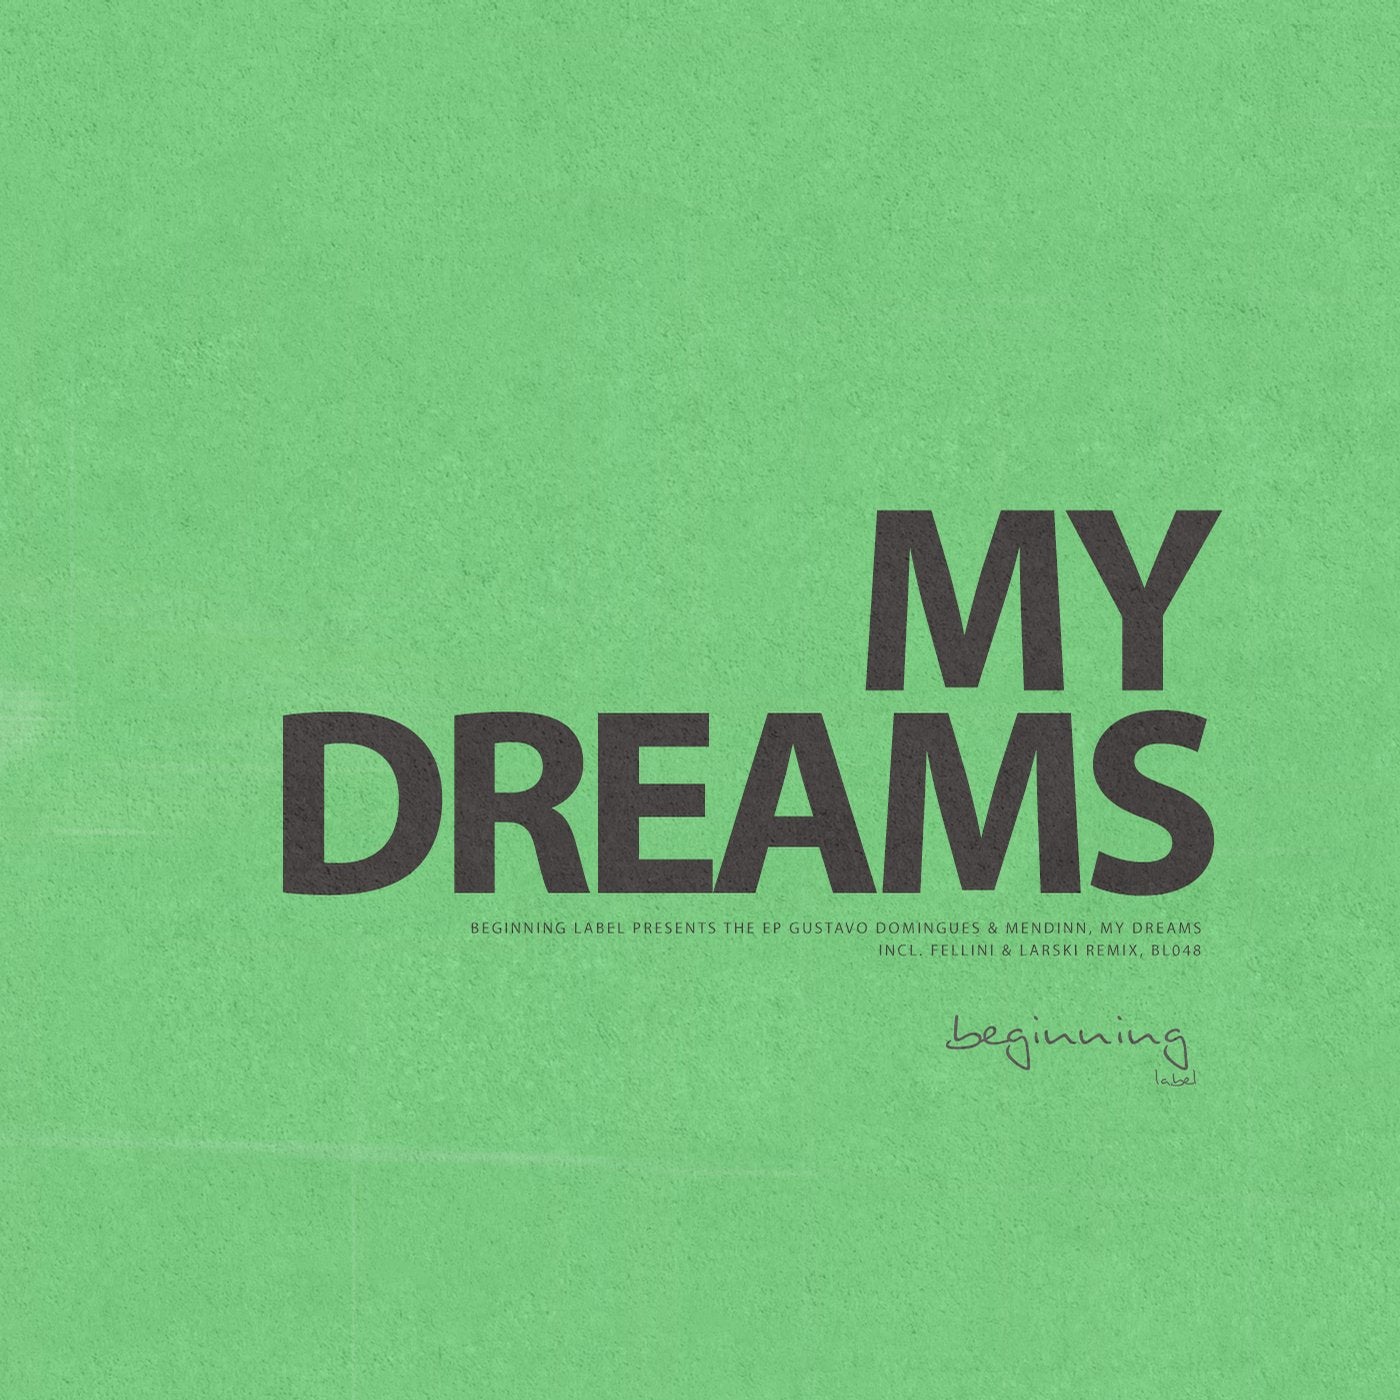 My Dreams EP